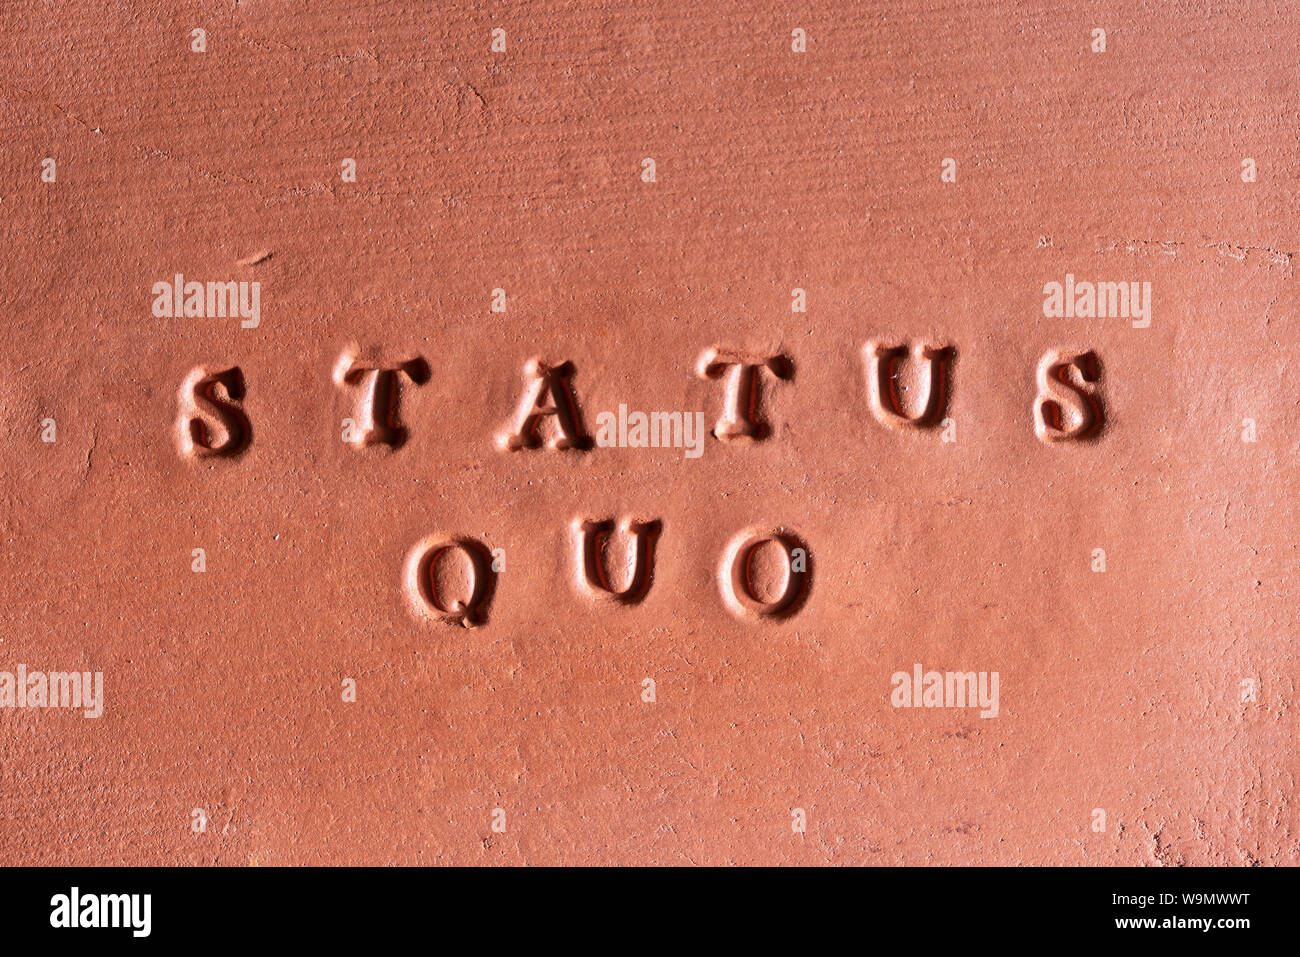 La frase "Status Quo" scritta in latino su una tavoletta di terracotta Foto Stock